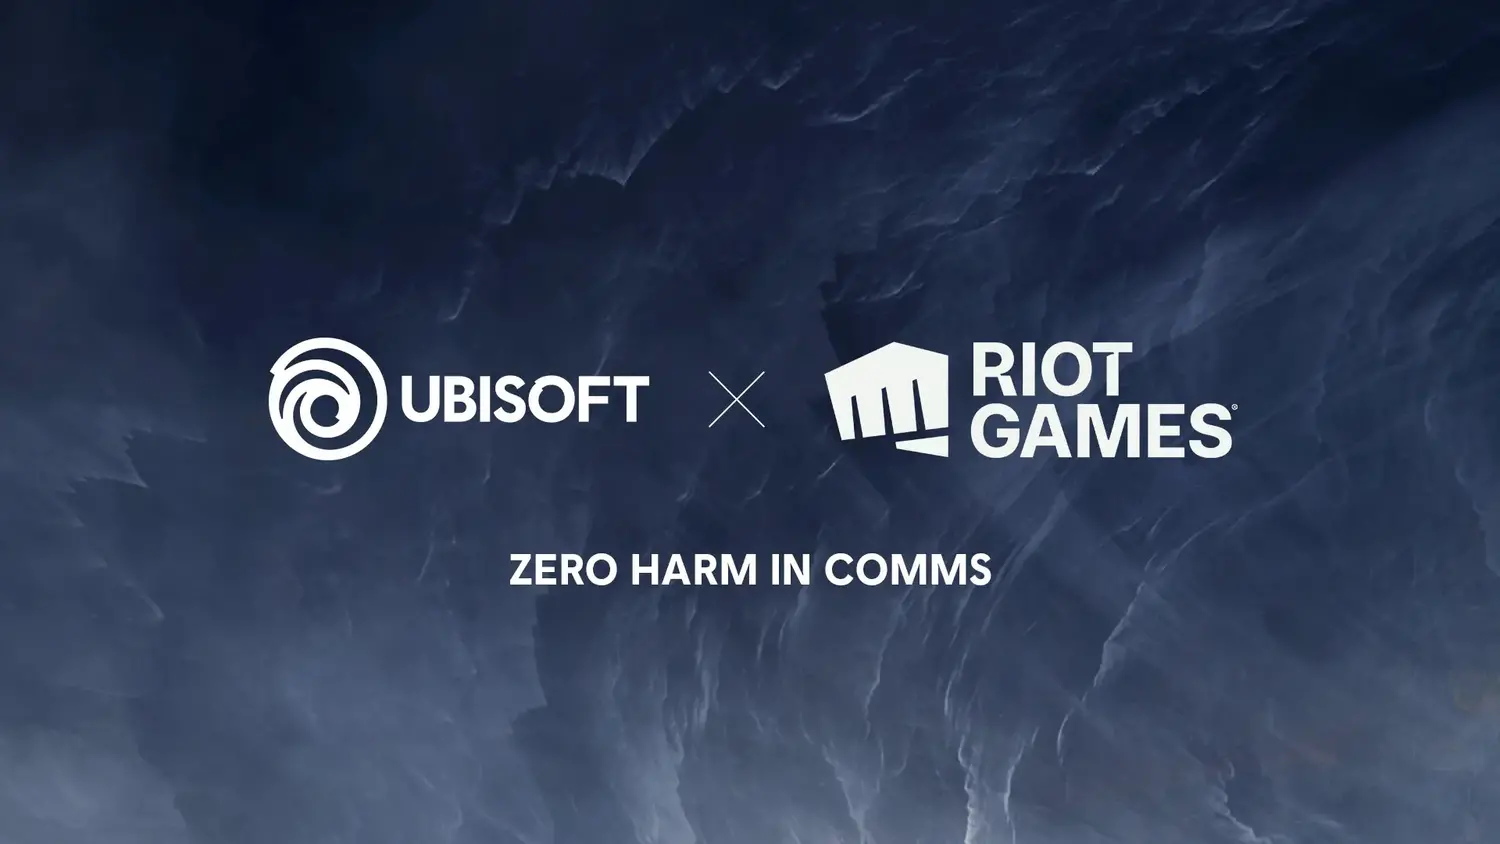 UbisoftとライアットゲームズがAIによって有害チャットを検出するために提携